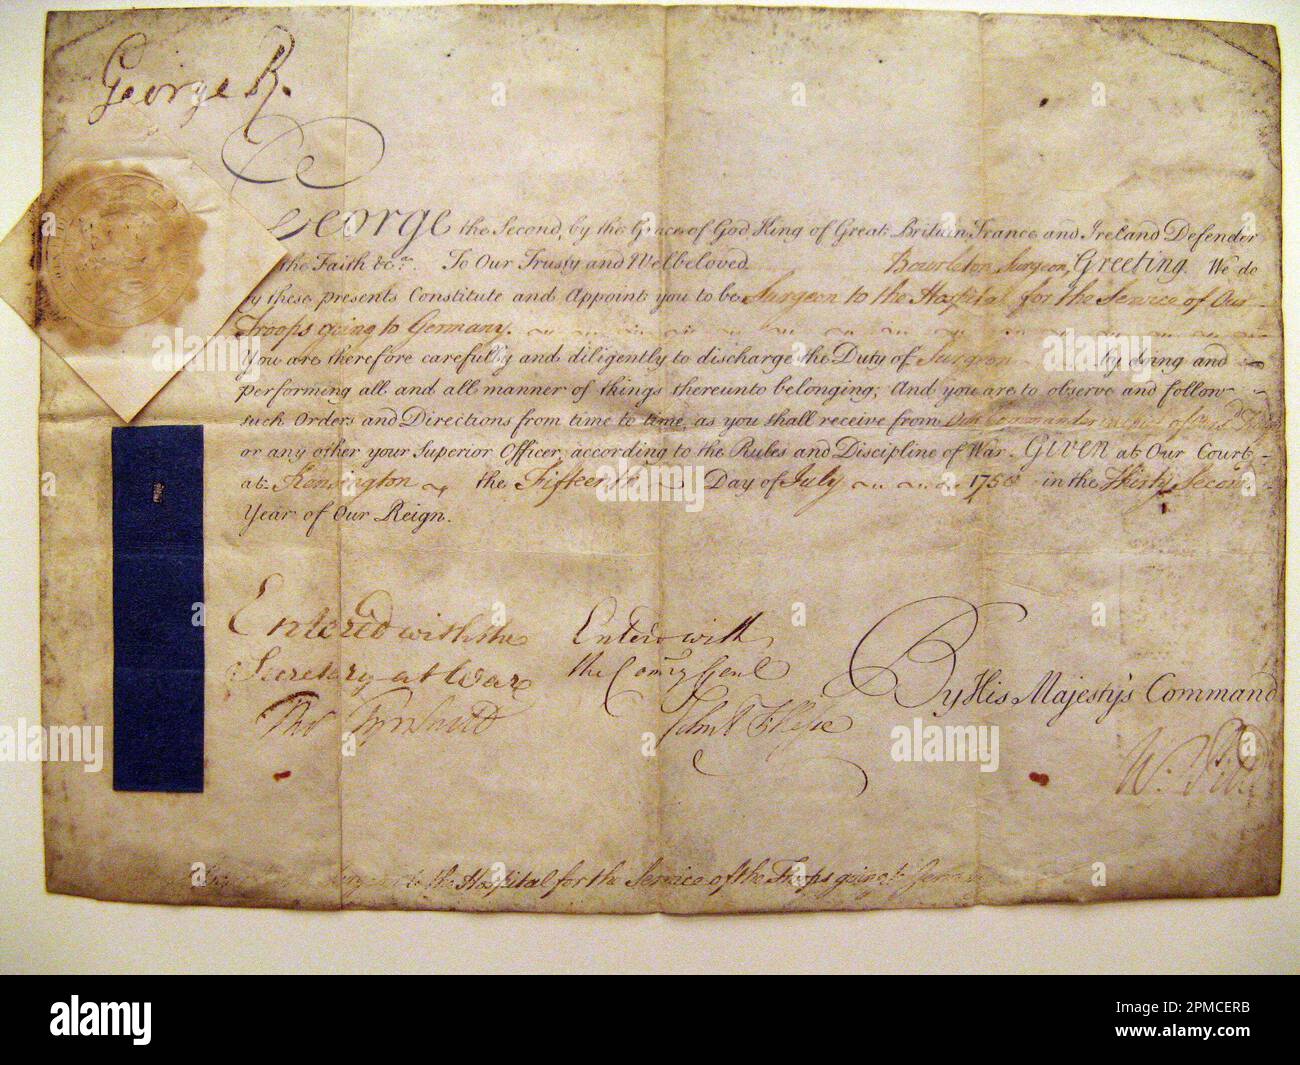 Manuskript von Kalligraphie, Ermächtigung zur Ernennung eines Militärchirurgen; Kalligrapher: William Pitt (1768-1788); England; Stift und braune Tinte, blaues Seidenband Stockfoto